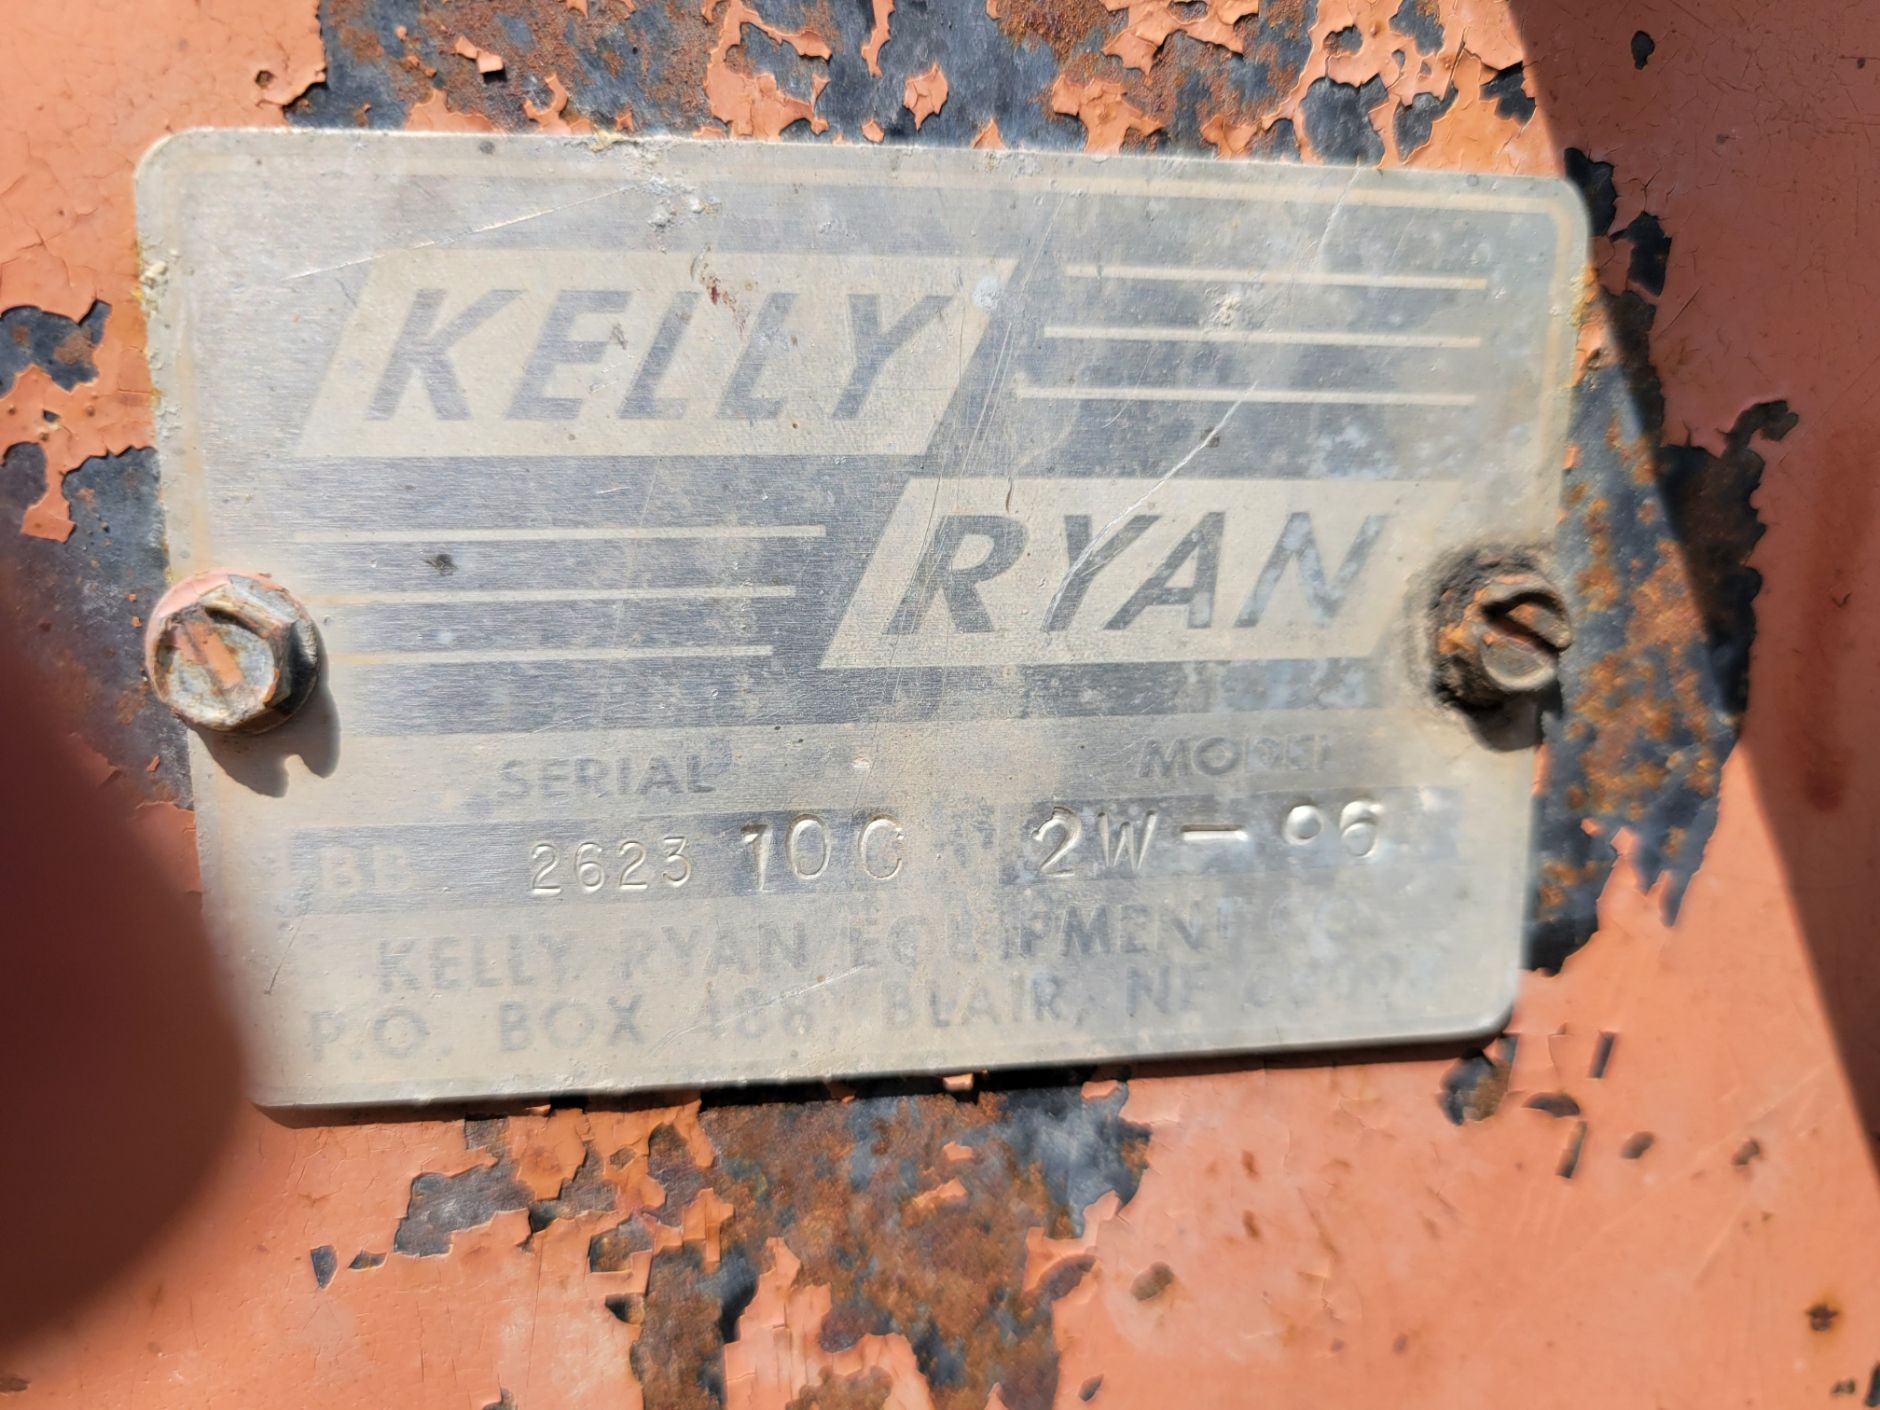 Kelly Ryan 2W-96 in Worthington, Iowa - Photo 7